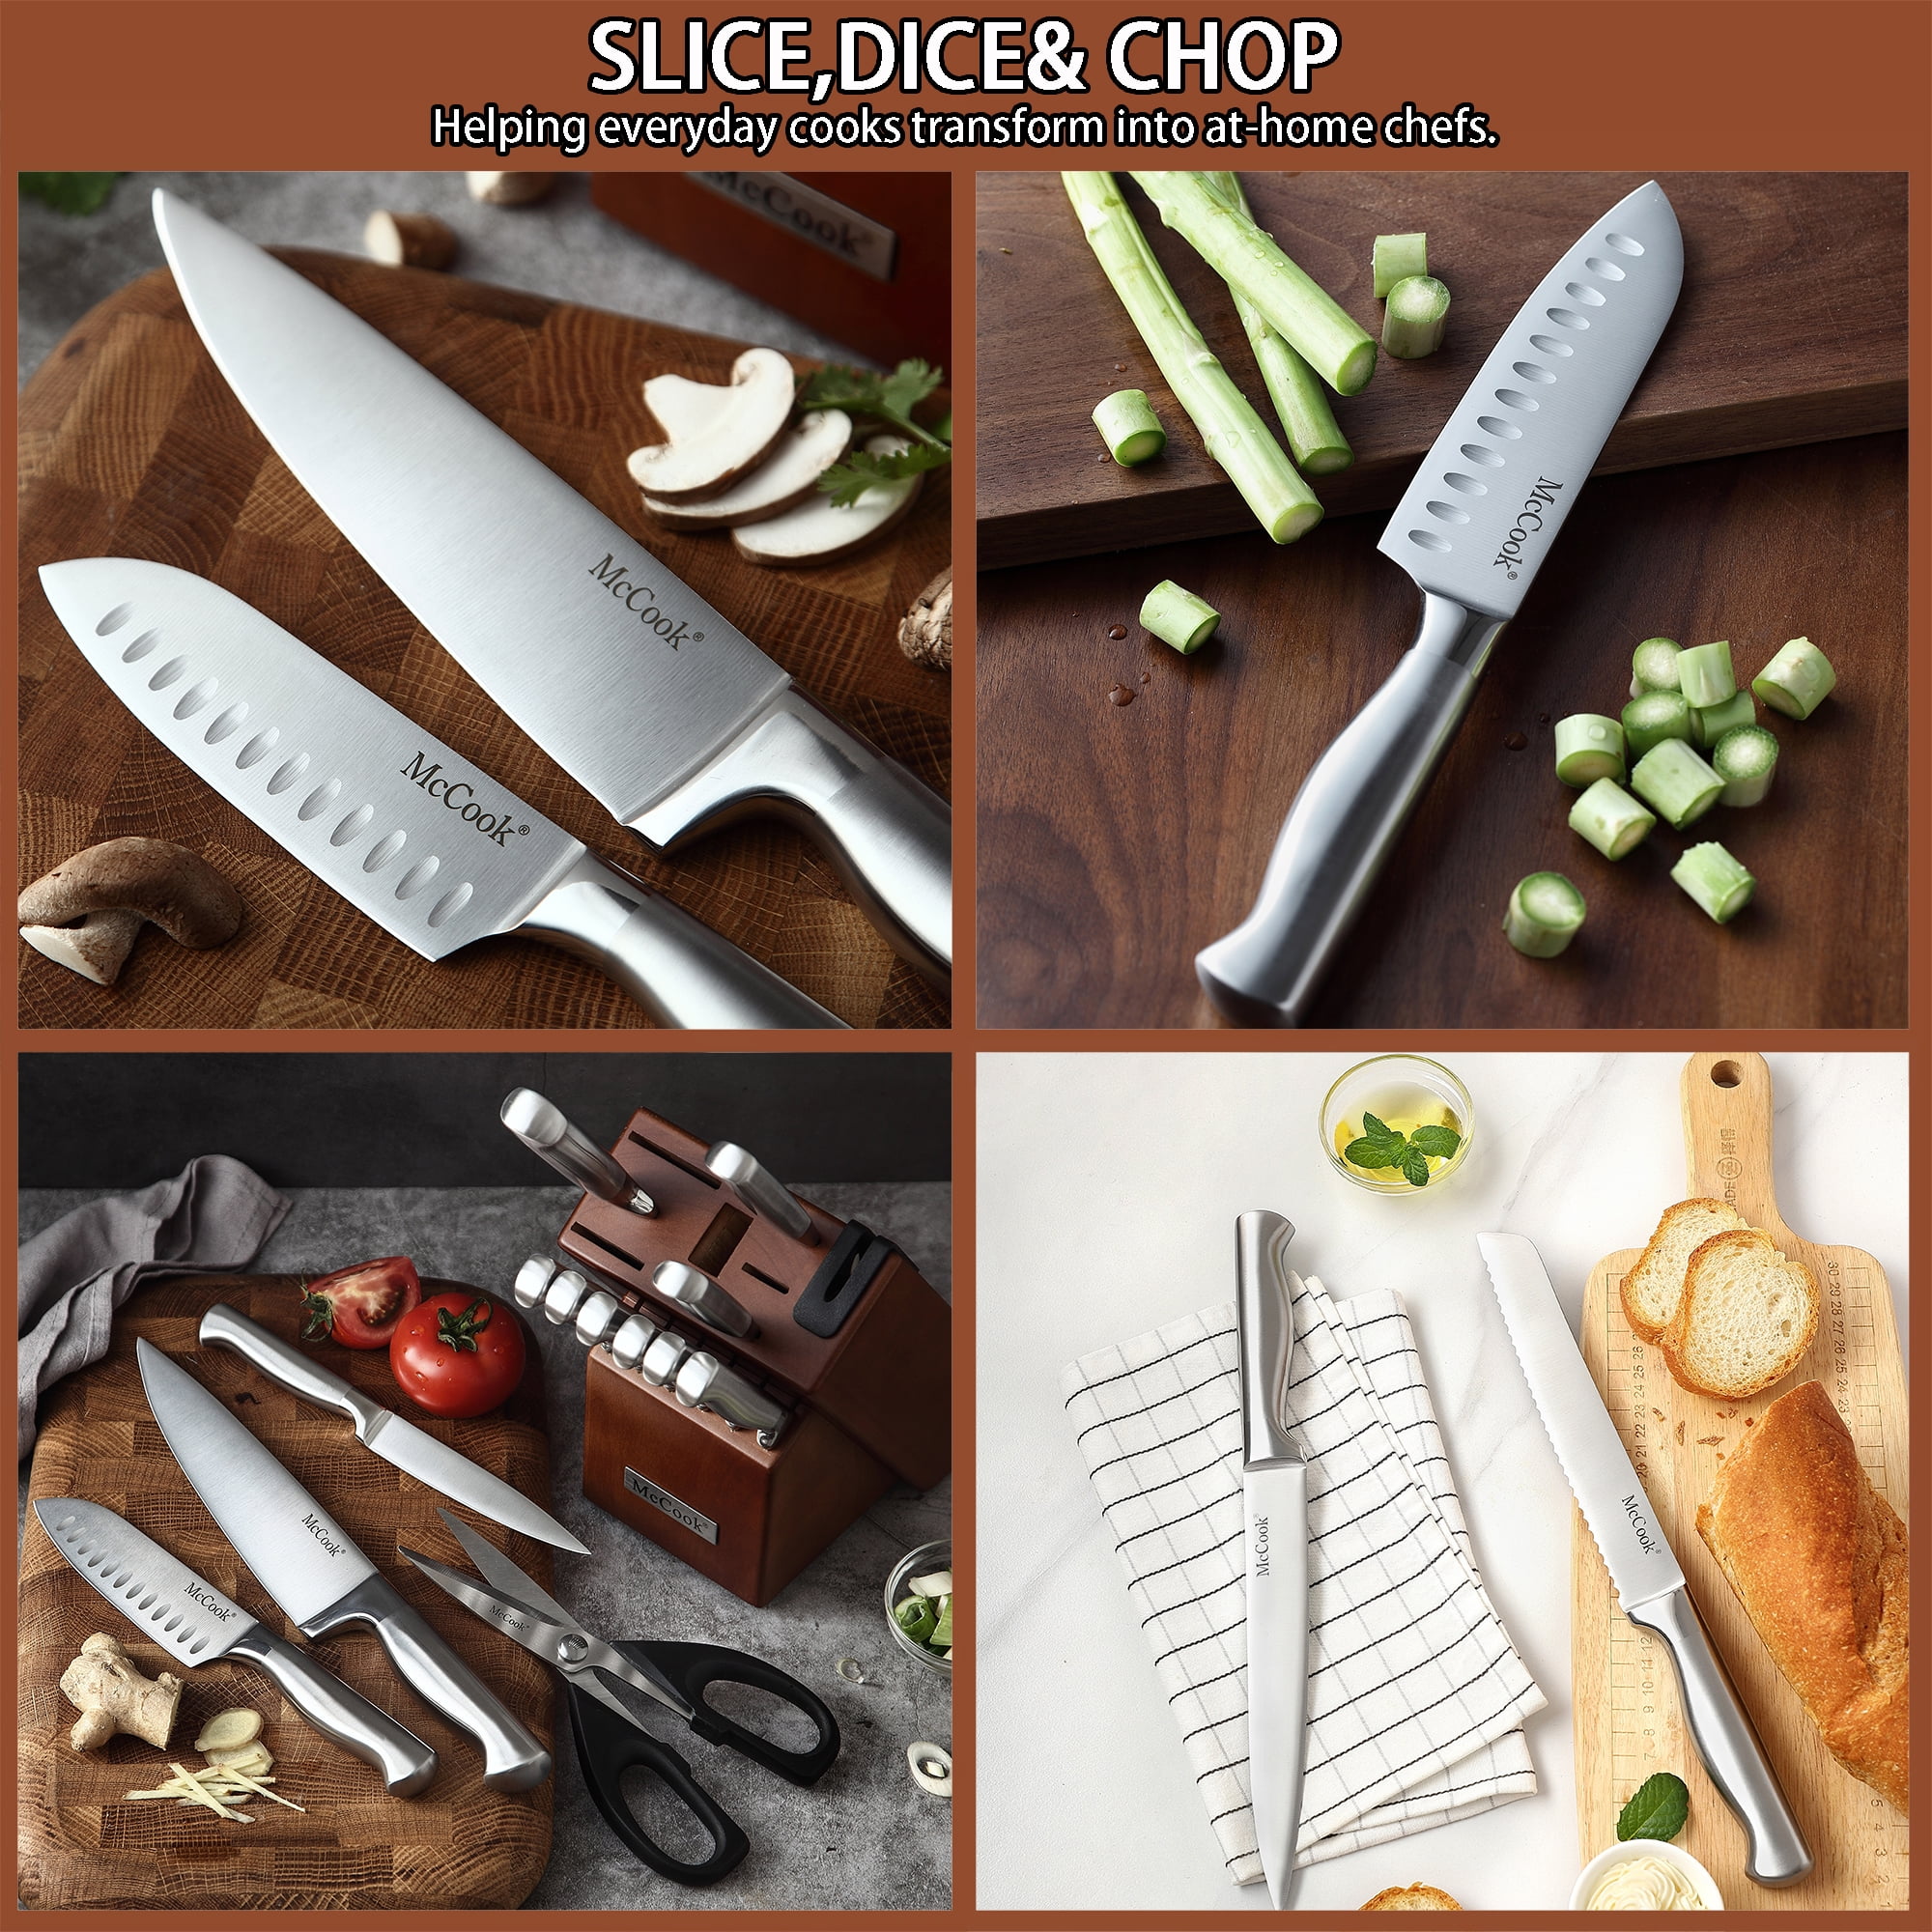 McCook Knife Sets, German Stainless Steel Kitchen Knife Block Sets with  Built-in Sharpener AZB0BG7R2HRG-P - Venue Marketplace